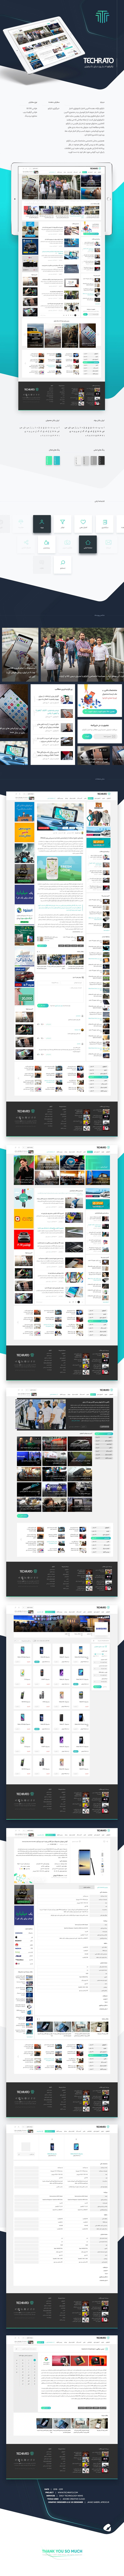 طراحی گرافیک وب، طراحی رابط کاربری و تجربی وب سایت تکراتو، اخبار حوزه تکنولوژی